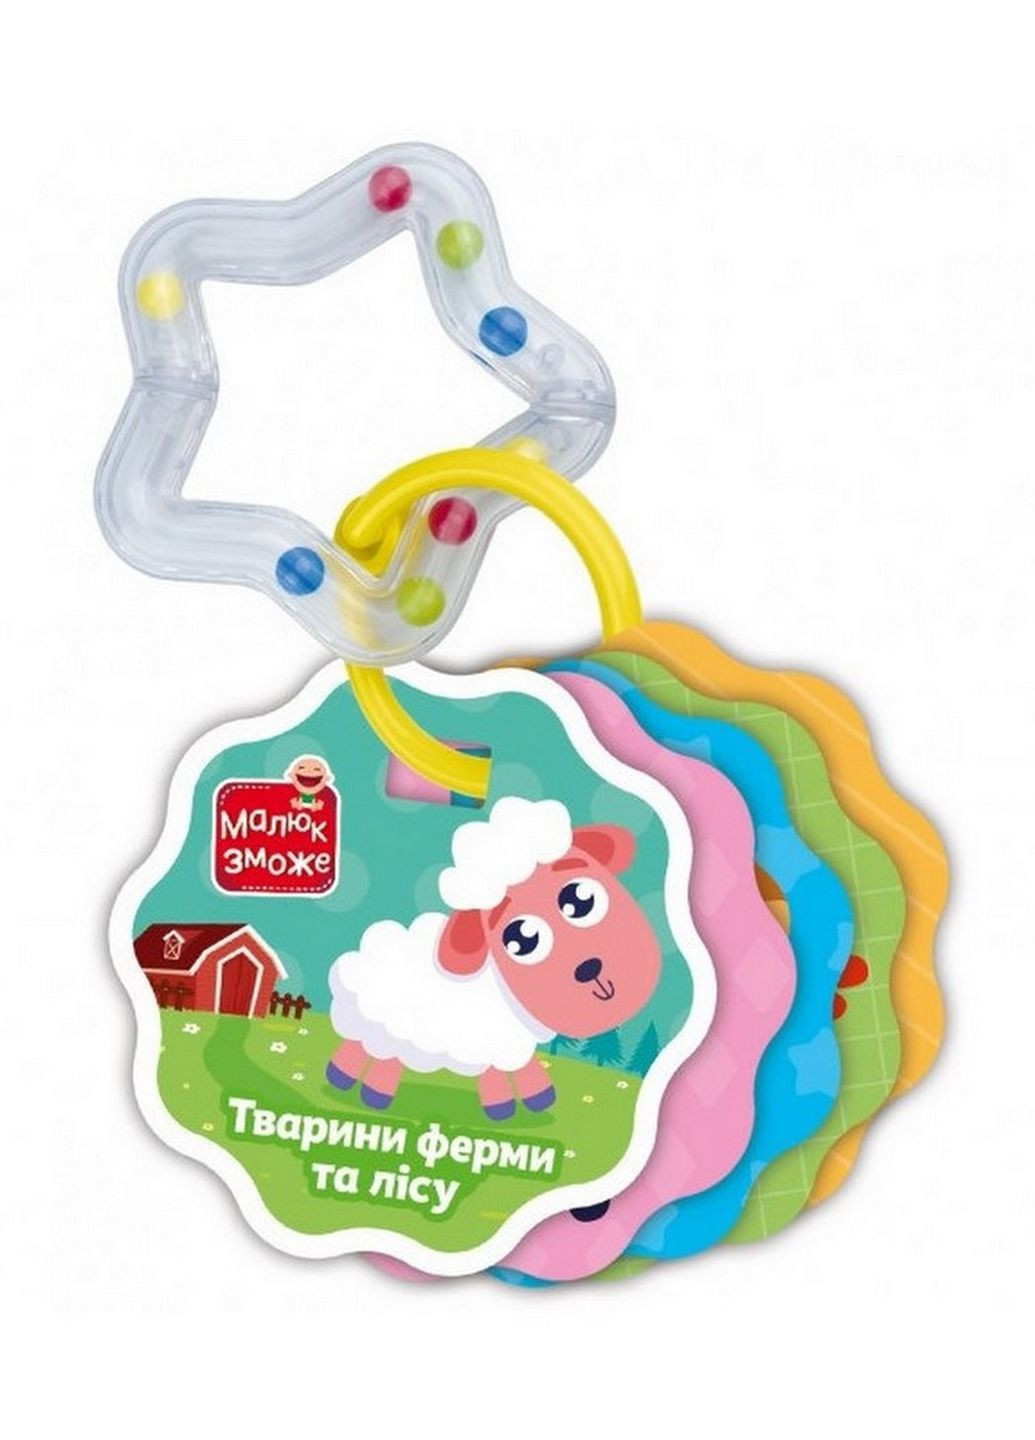 Картки на кільці Тварини ферми та лісу VT2000-30 з брязкальцем Vladi toys (276776423)